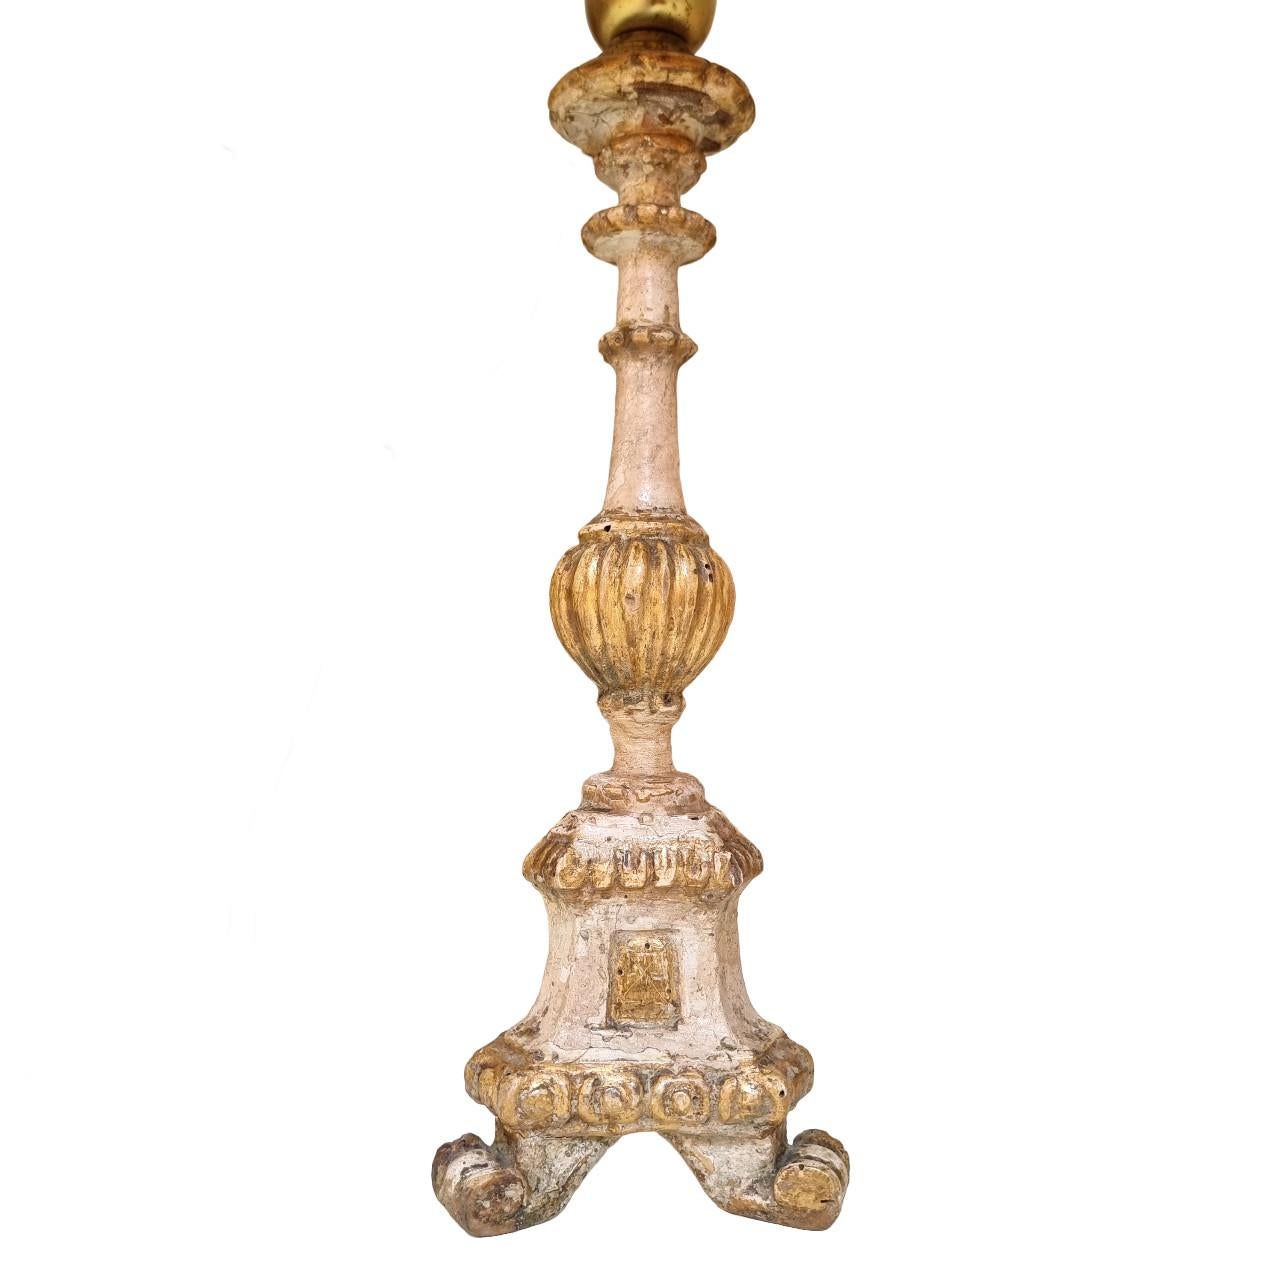 Il s'agit d'une paire absolument fabuleuse de chandeliers italiens en bois sculpté transformés en lampes de table, datant du début du 19e siècle, peints avec une laque ivoire et finis avec une dorure à la feuille d'or d'origine.
Chaque chandelier